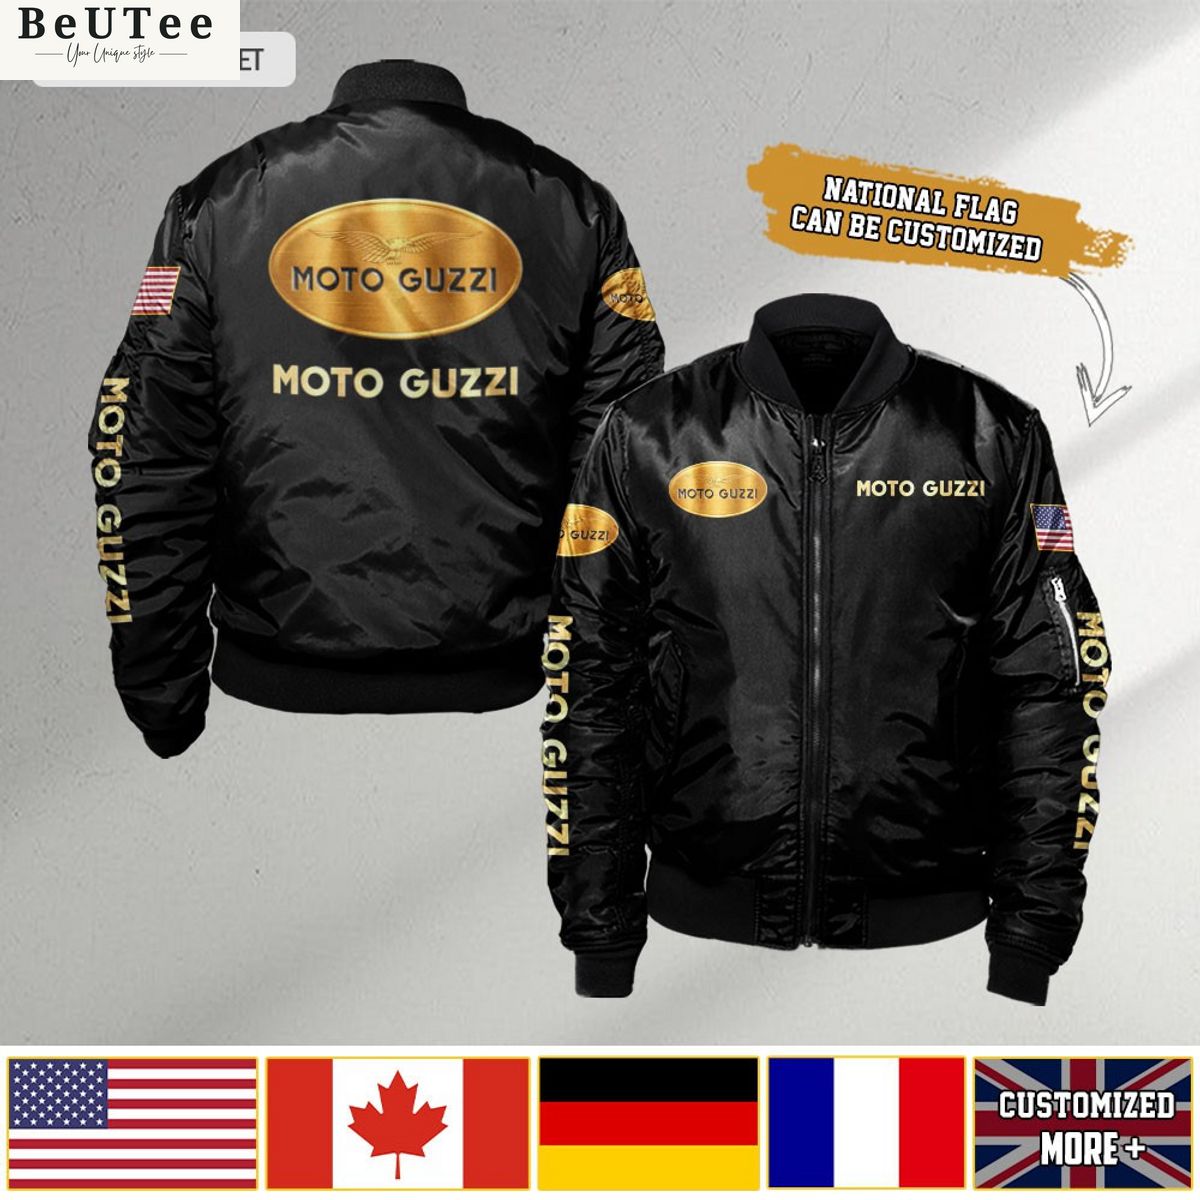 moto guzzi custom flag 3d bomber jacket 1 N7XXk.jpg